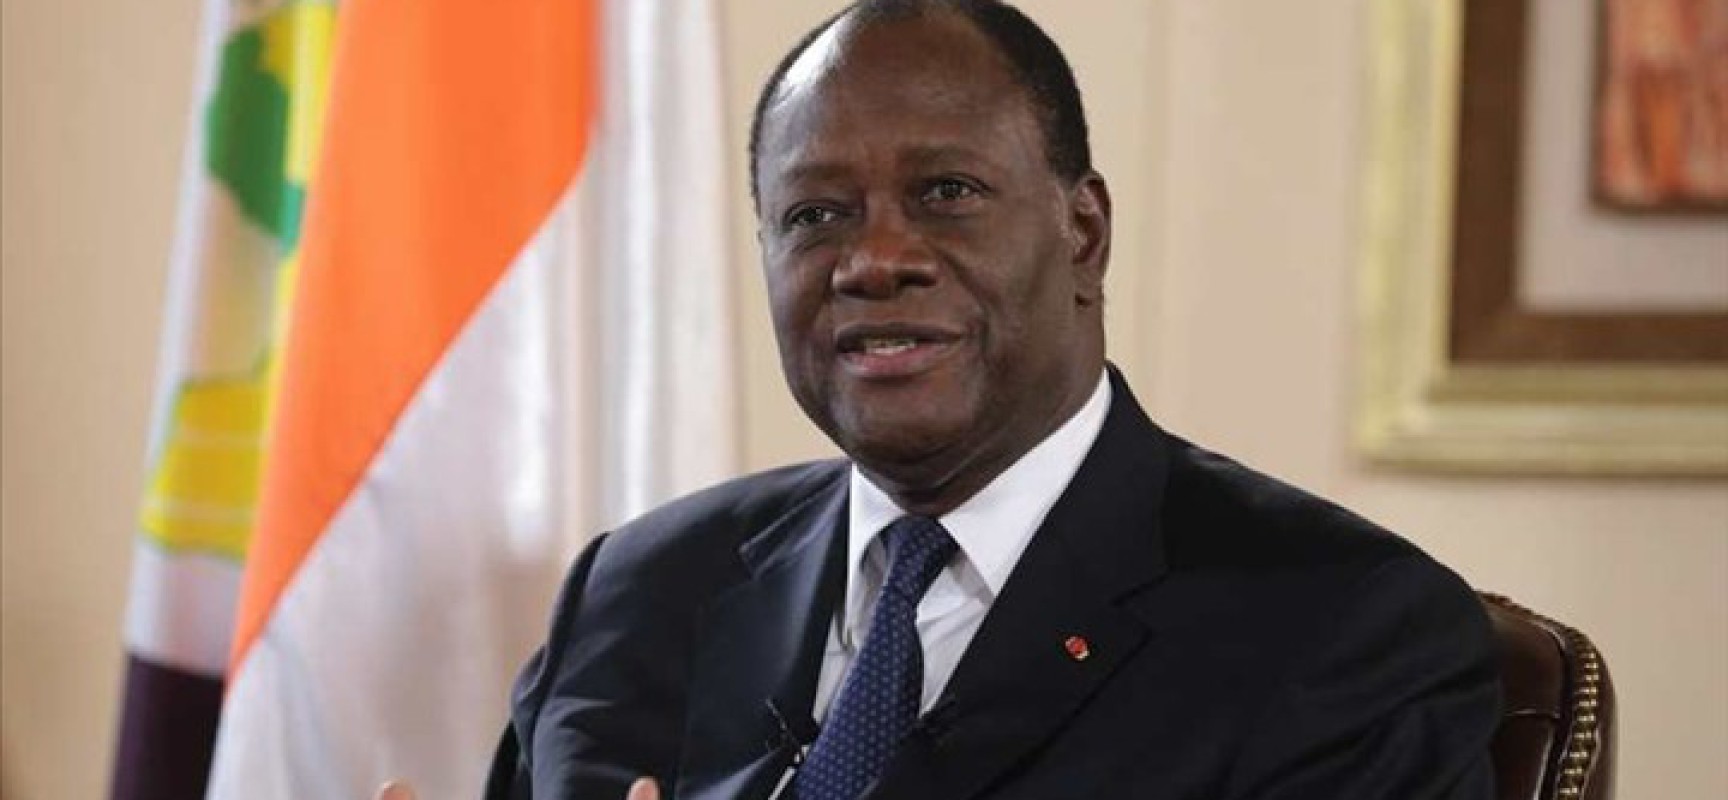 Côte d’Ivoire : Ouattara annonce une croissance économique autour de 8% en 2017